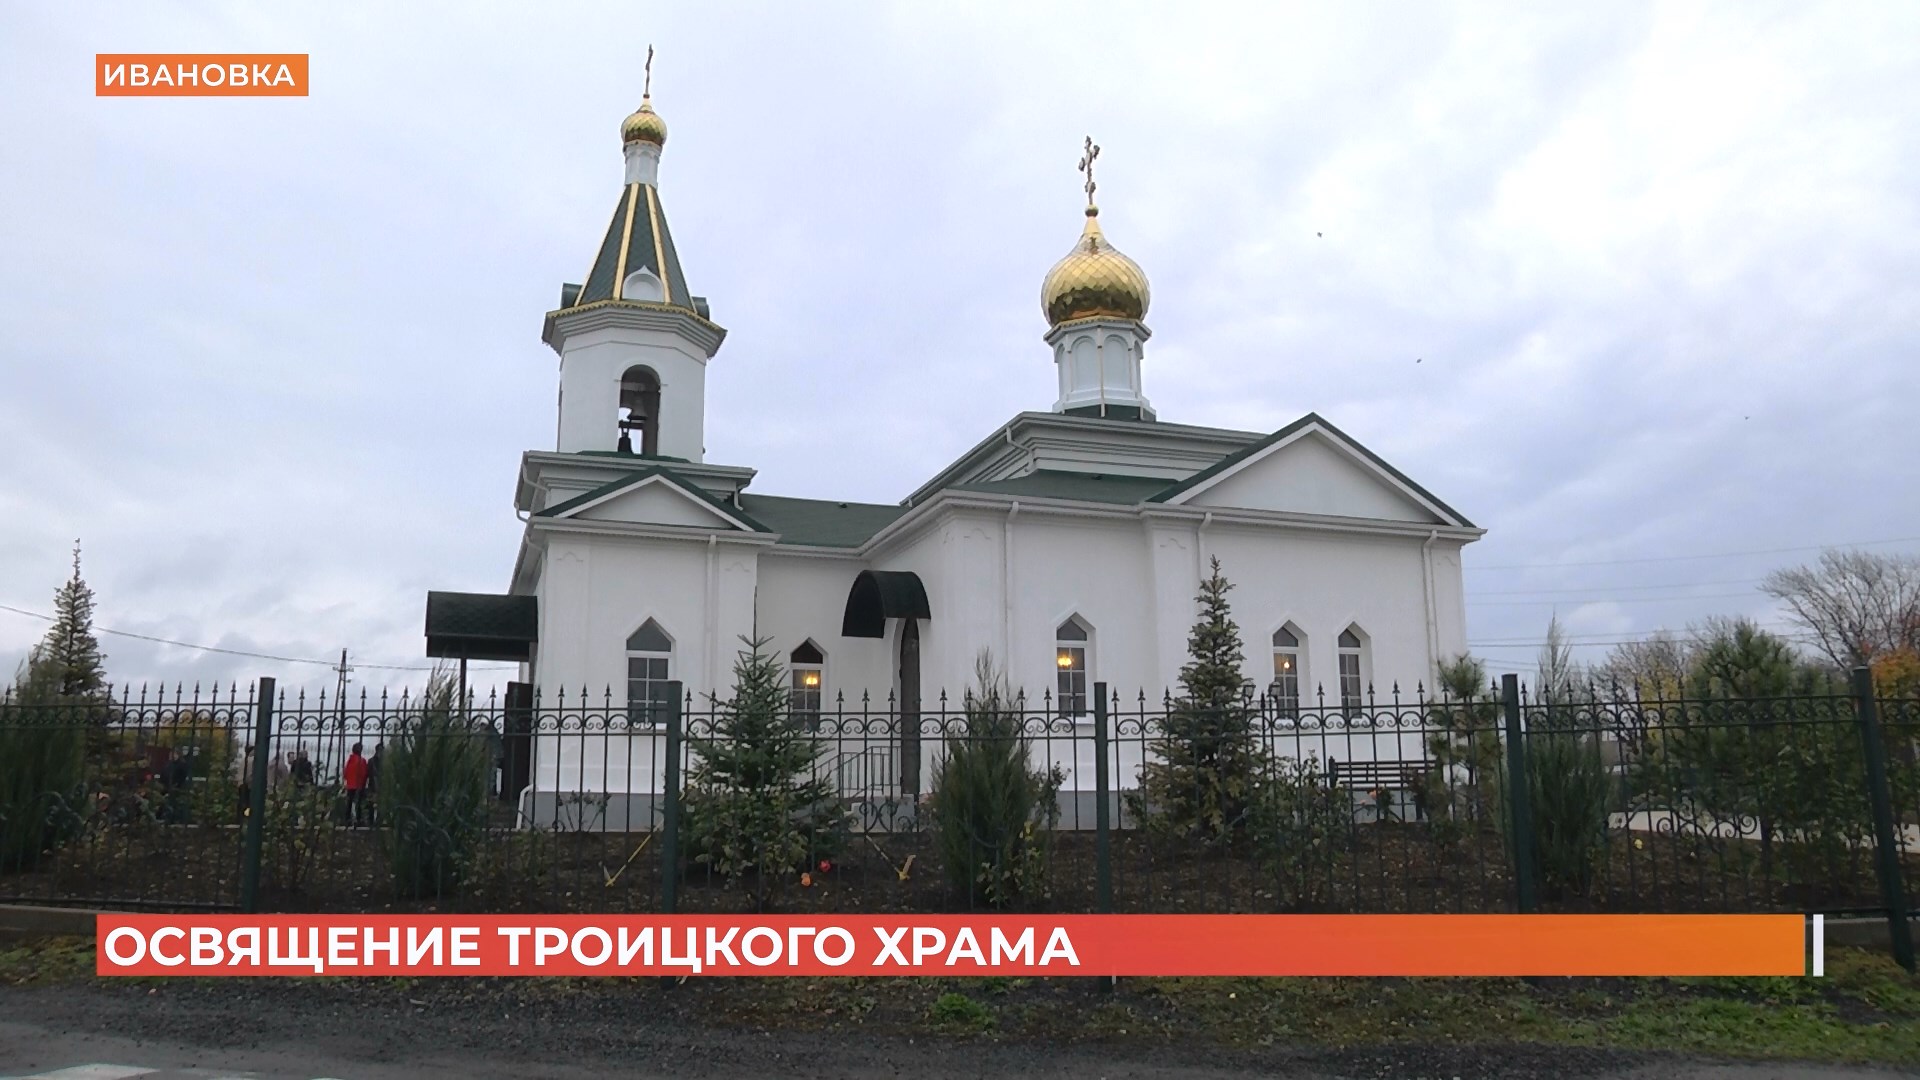 Троицкую церковь 19 века отреставрировали и освятили в Ивановке